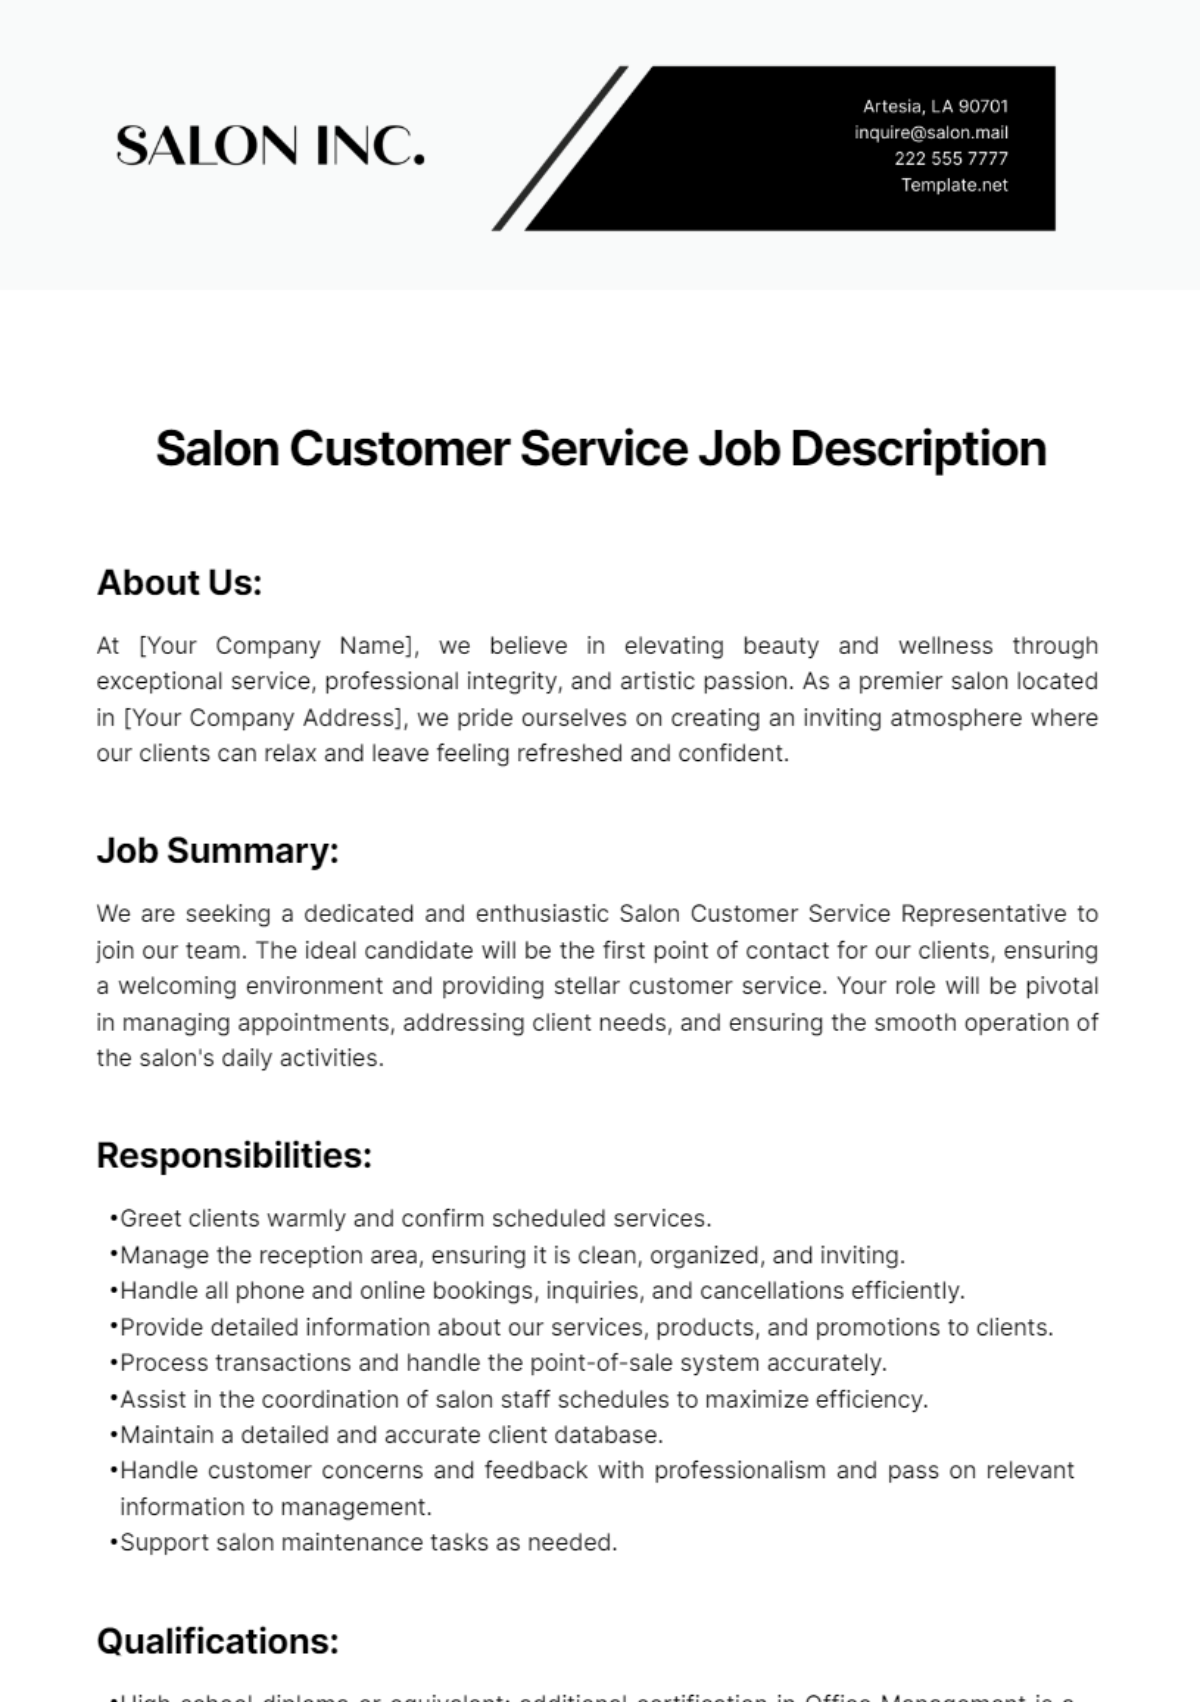 Salon Customer Service Job Description Template